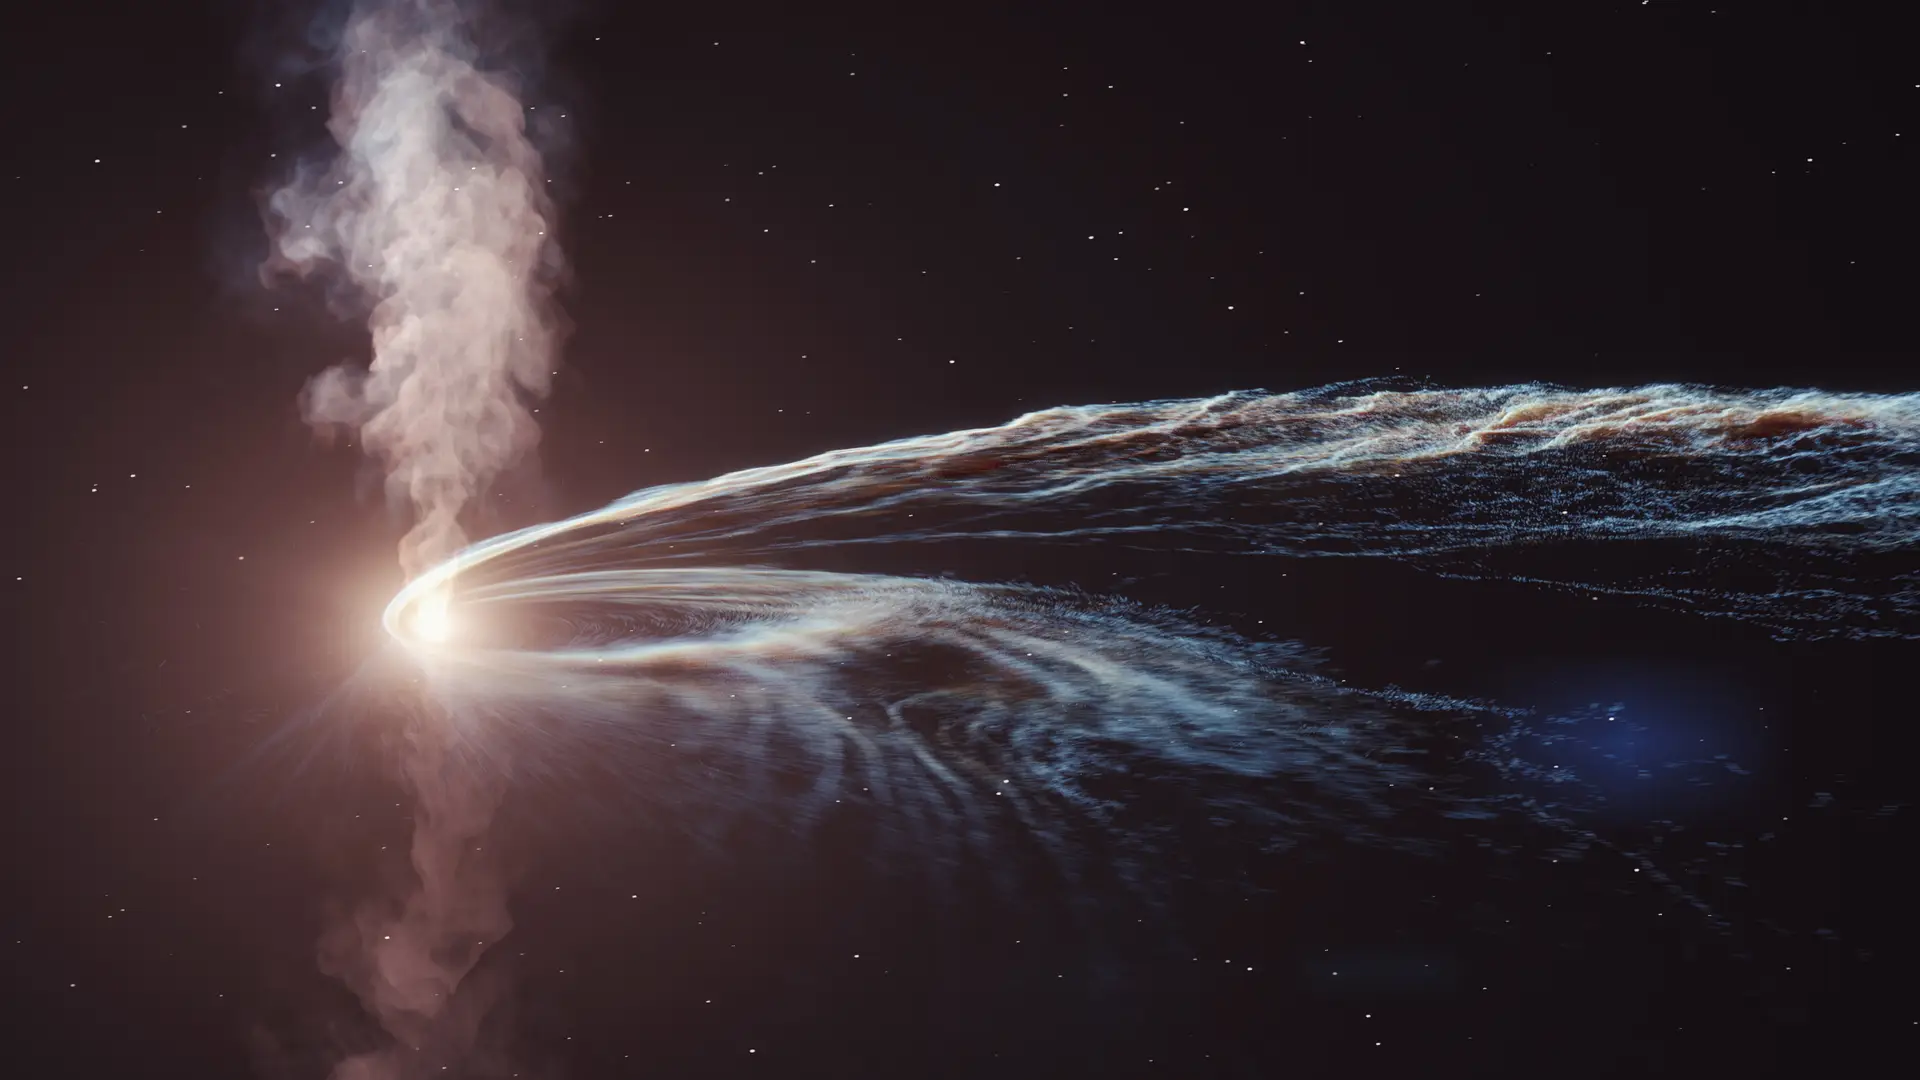 Ilustração do evento AT2019dsg em que um buraco negro supermassivo engole uma estrela. Parte do material não é consumido pelo buraco negro e é lançado de volta ao espaço.